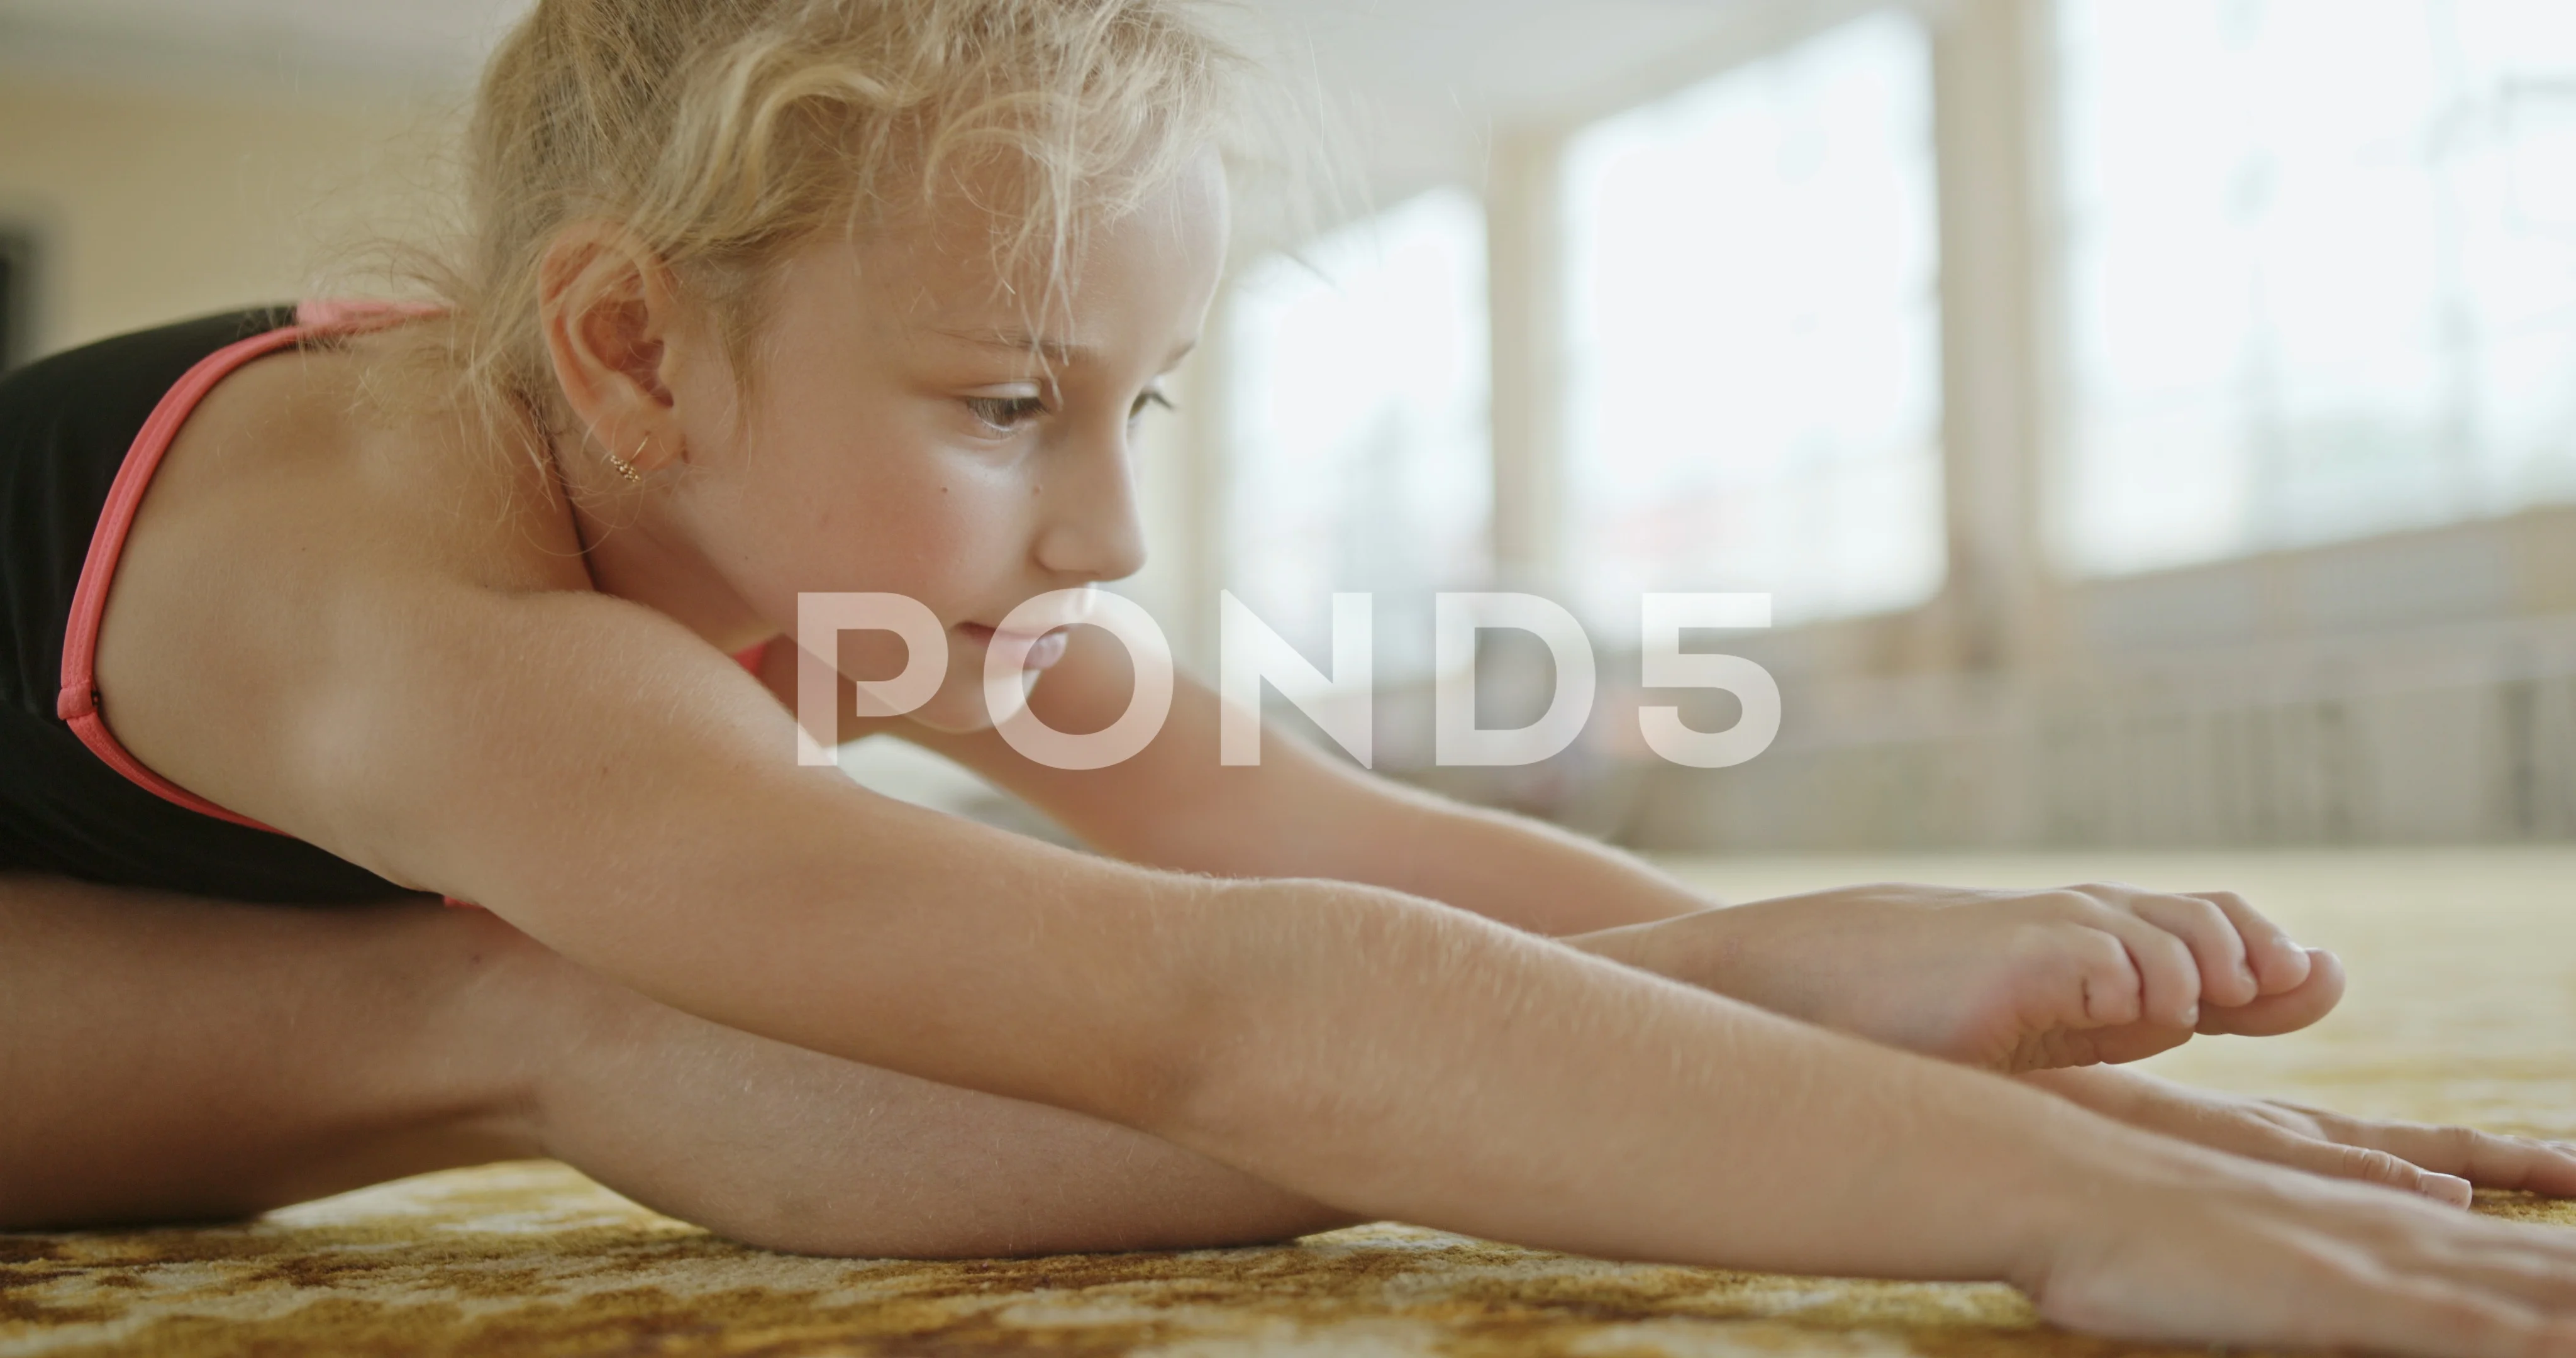 https://images.pond5.com/little-girl-leotard-stretching-foot-footage-119304413_prevstill.jpeg